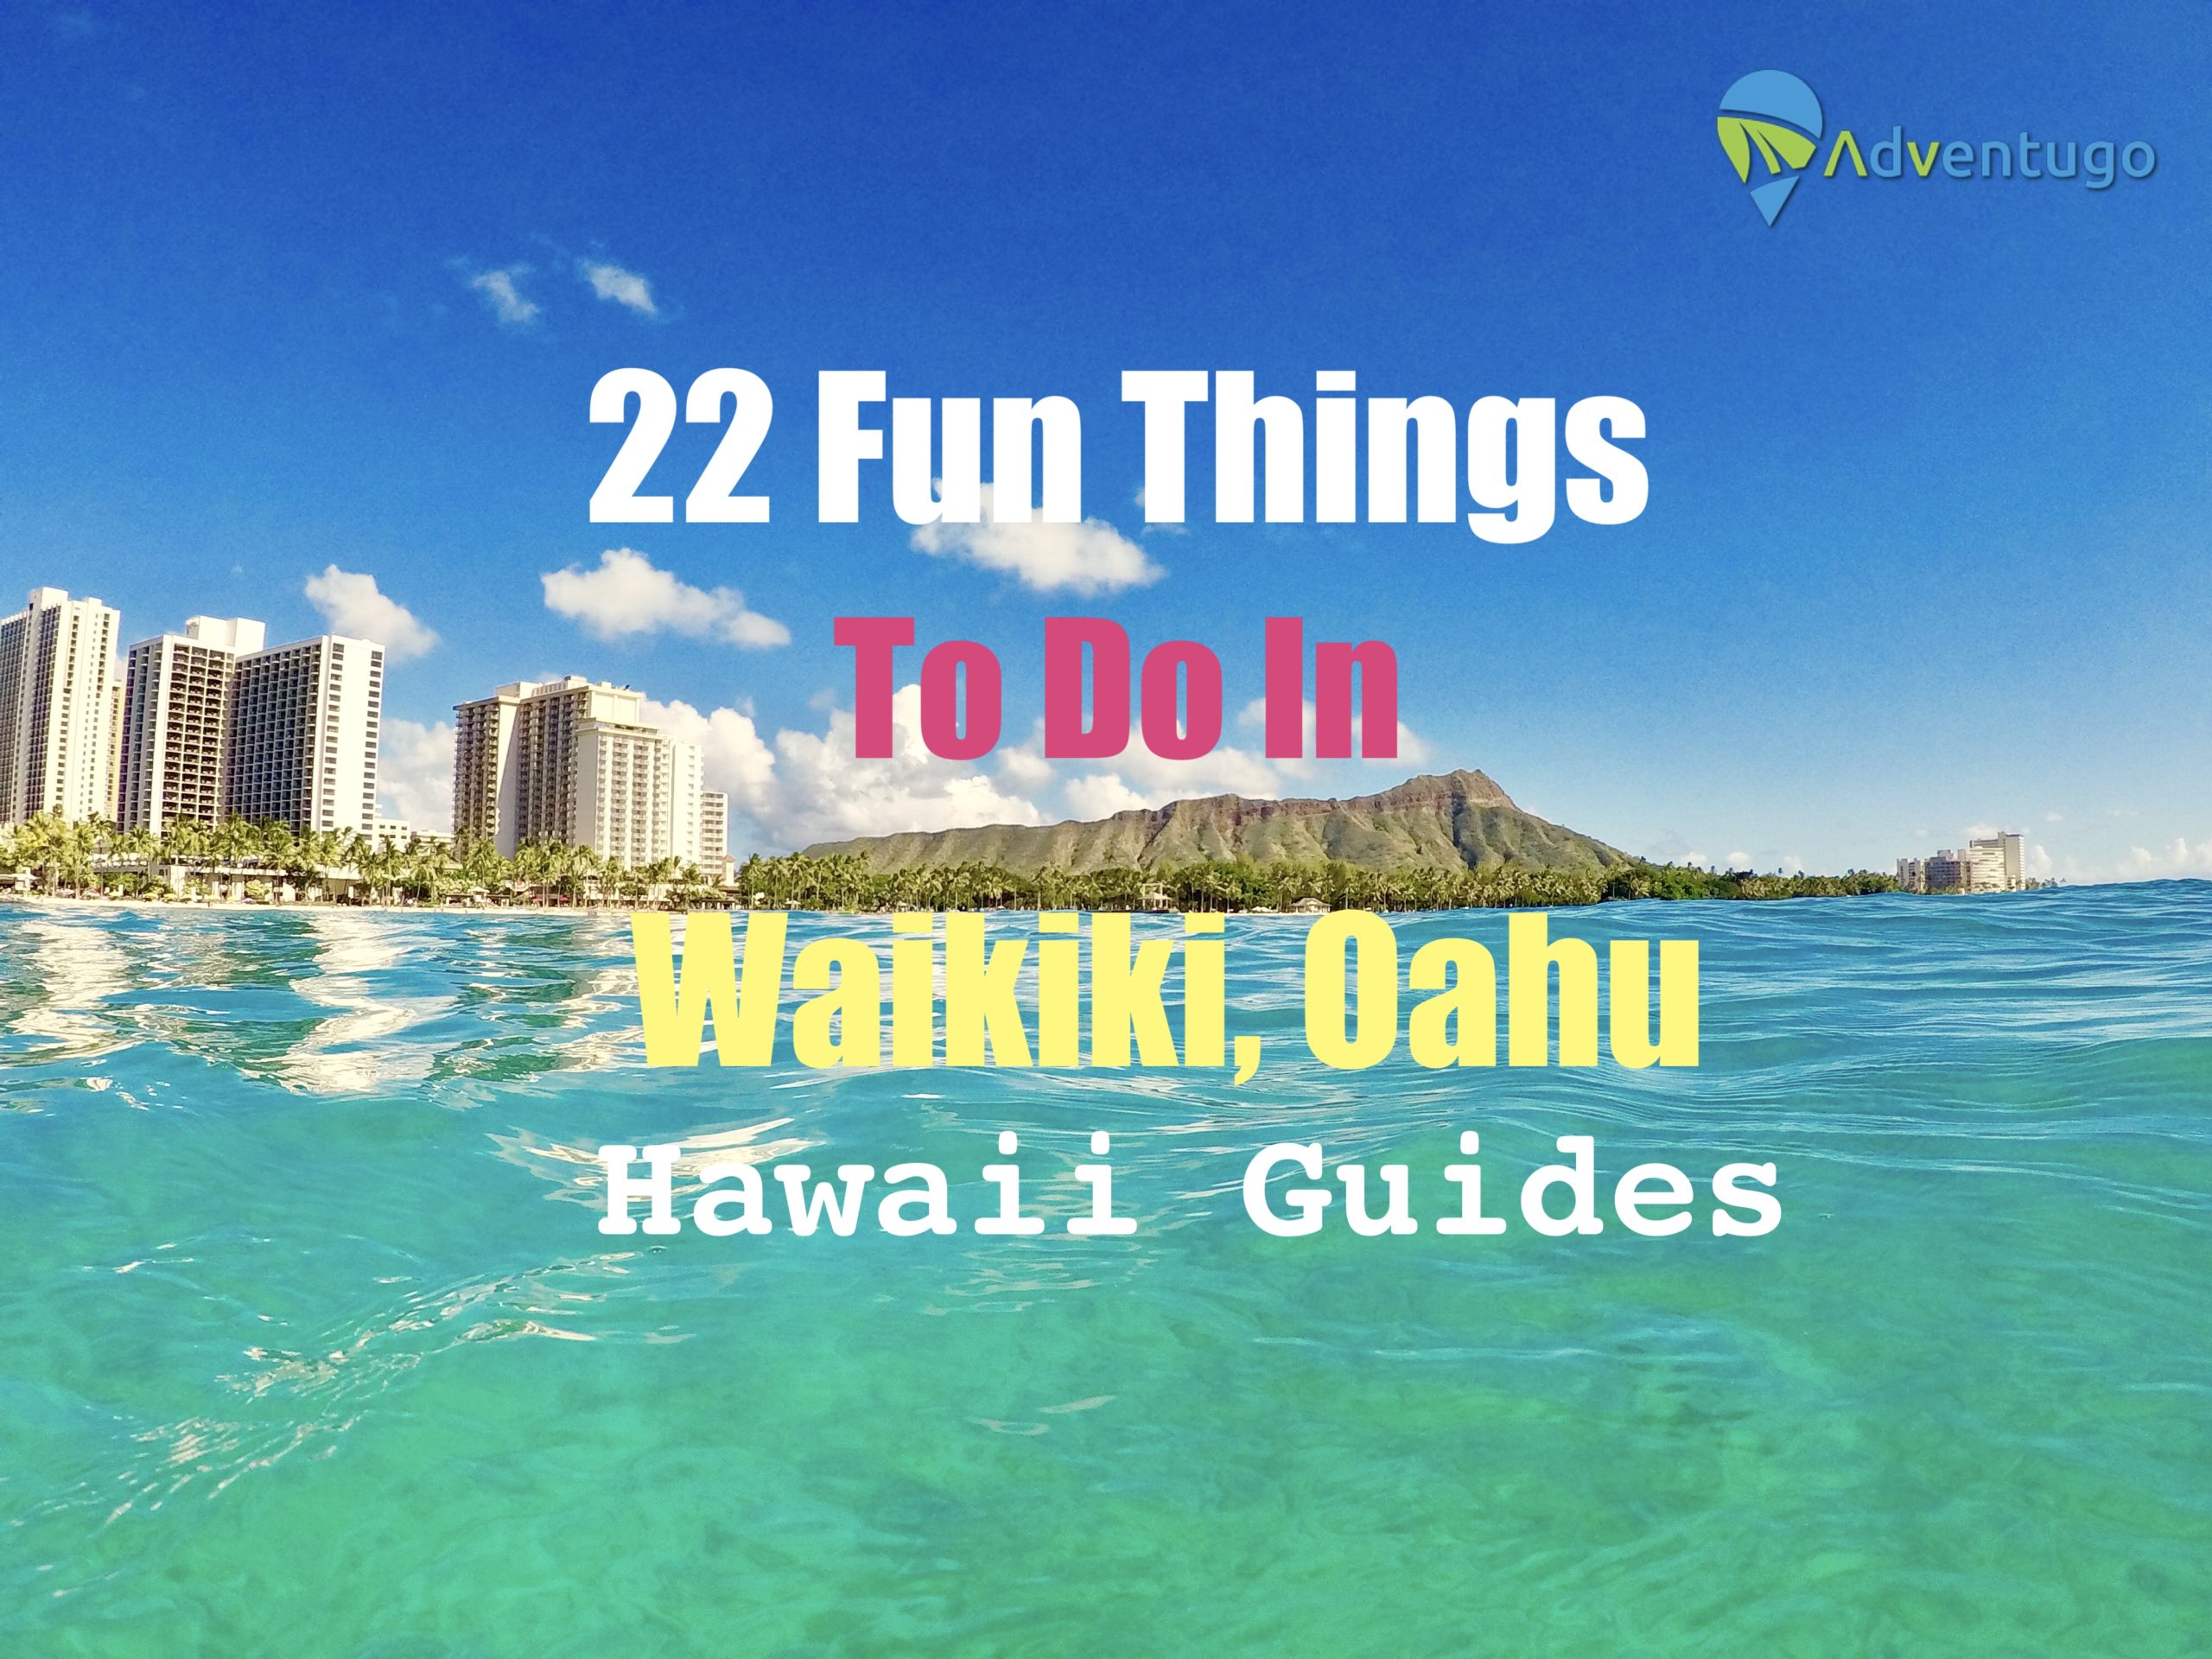 22 Fun Things to do in Waikiki, Oahu. Hawaii Guides Adventugo